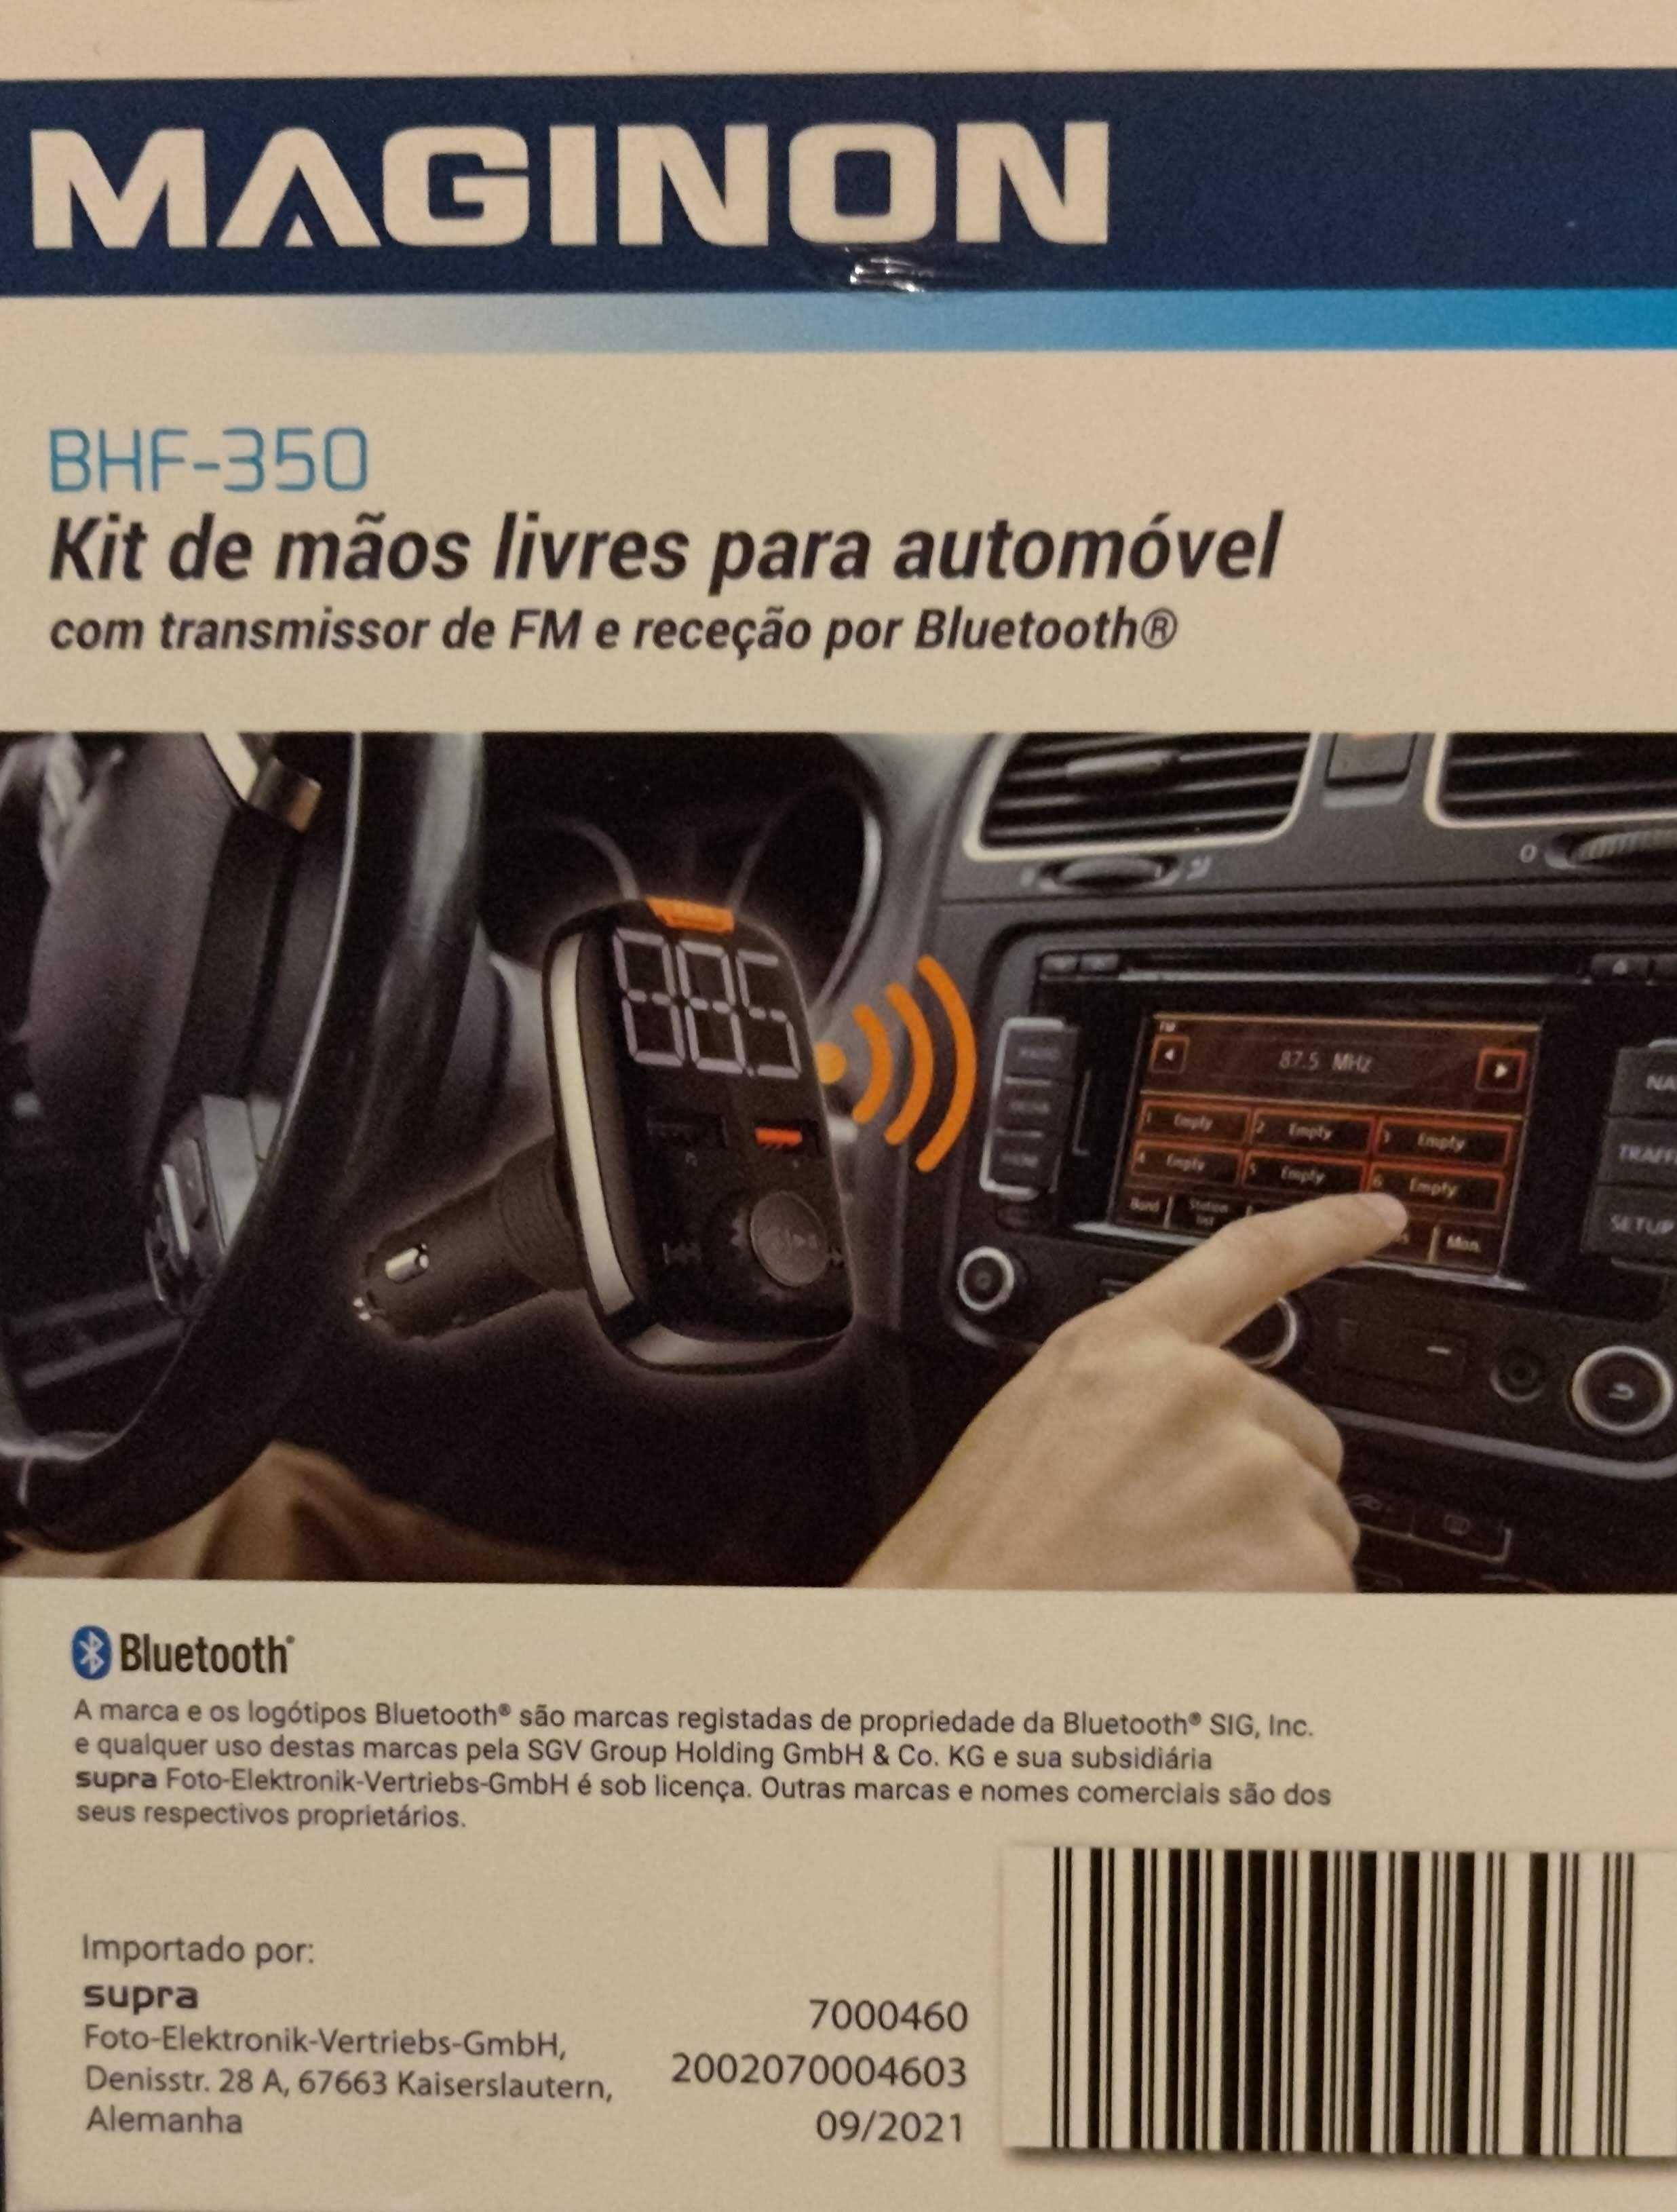 Transmissor fm com Bluetooth 5.1 (kit mãos livres)